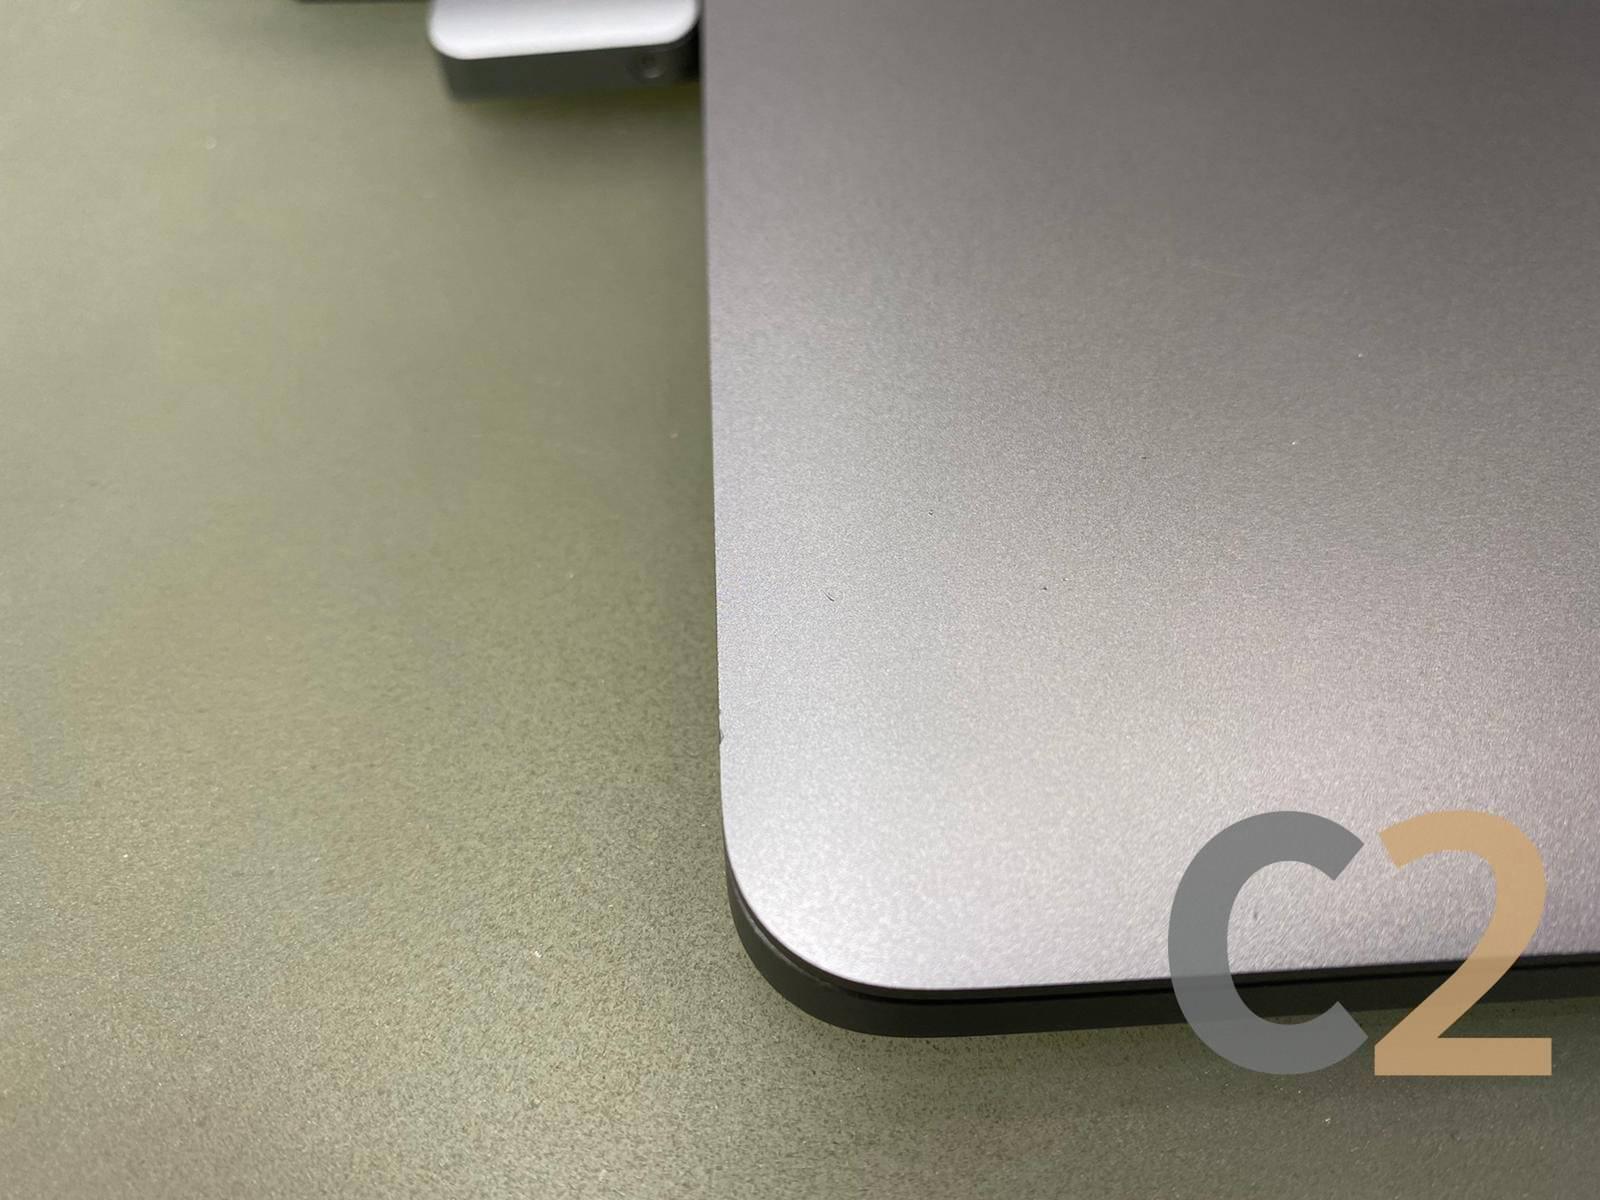 (特價) (USED) Apple Macbook Pro 13inch 2017 i5 8g 256ssd No-Touch Bar 90% NEW - C2 Computer